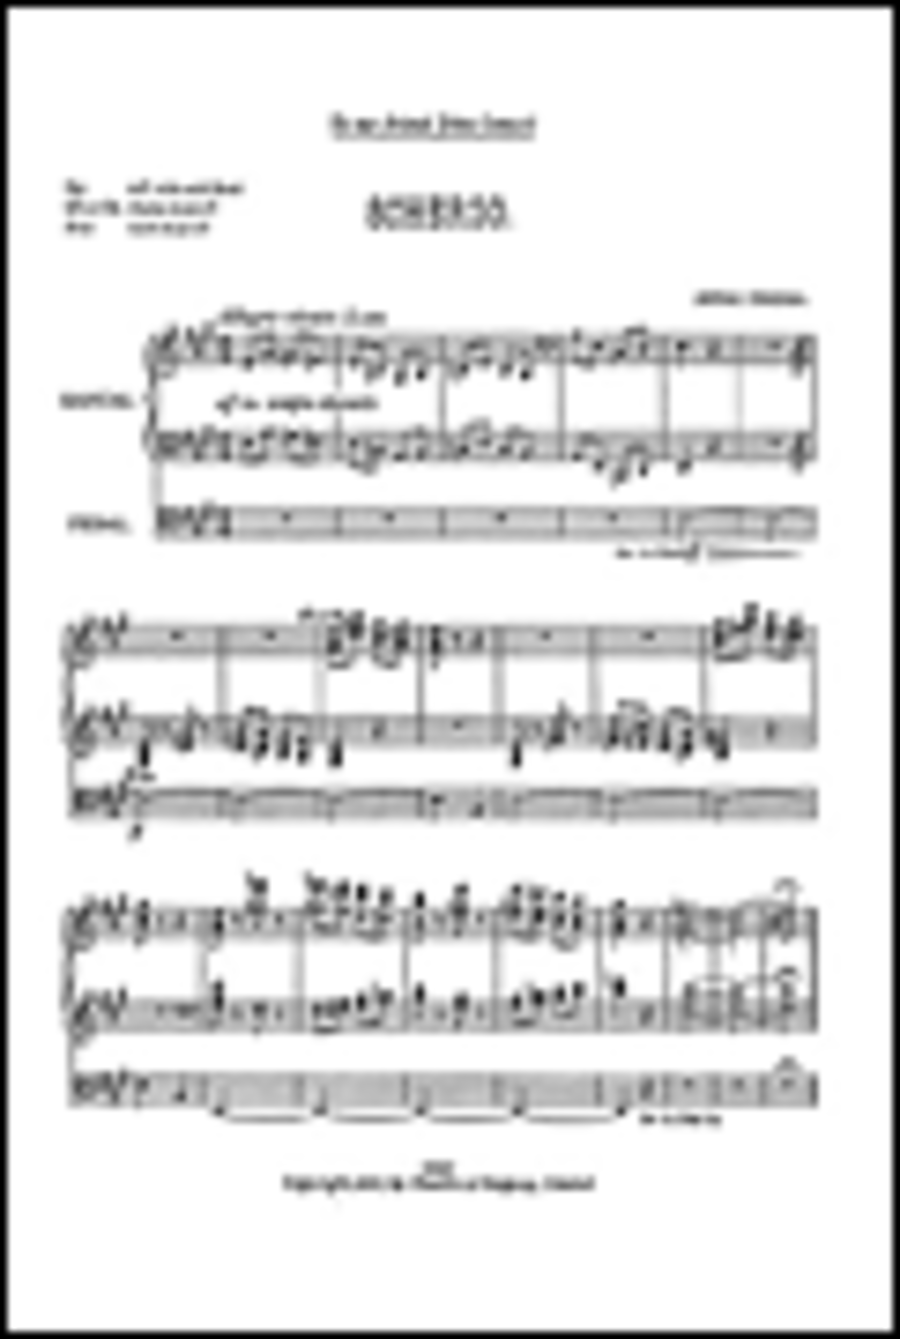 Alfred Hollins: Scherzo For Organ